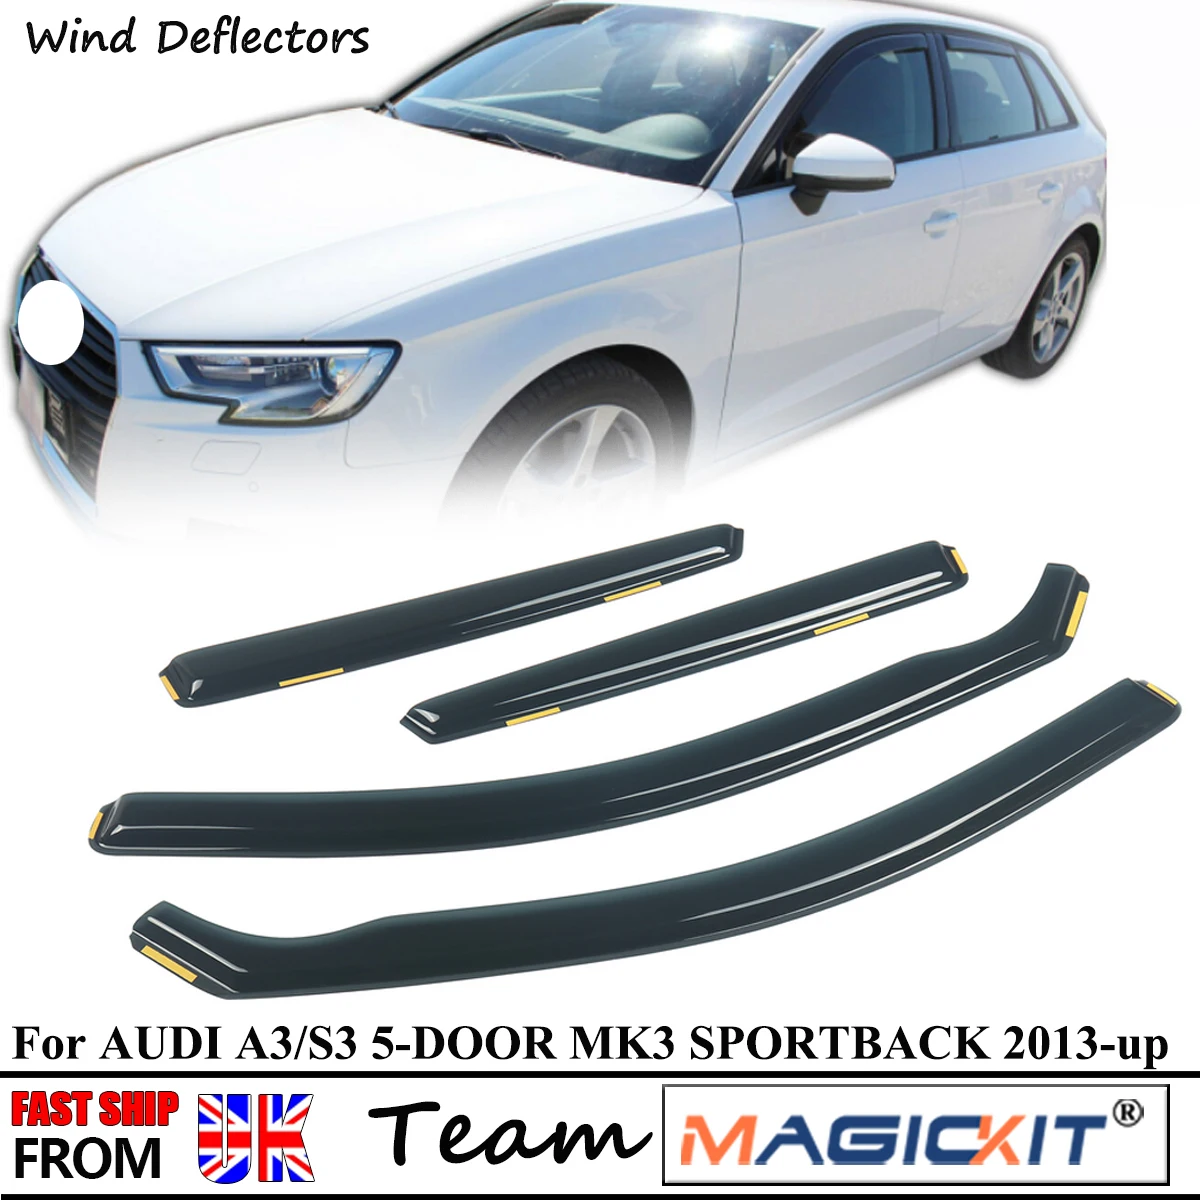 

Magickit For AUDI A3/S3 MK3 5-Doors 2013-2019 Hatchback 4pc Rain Wind Deflectors